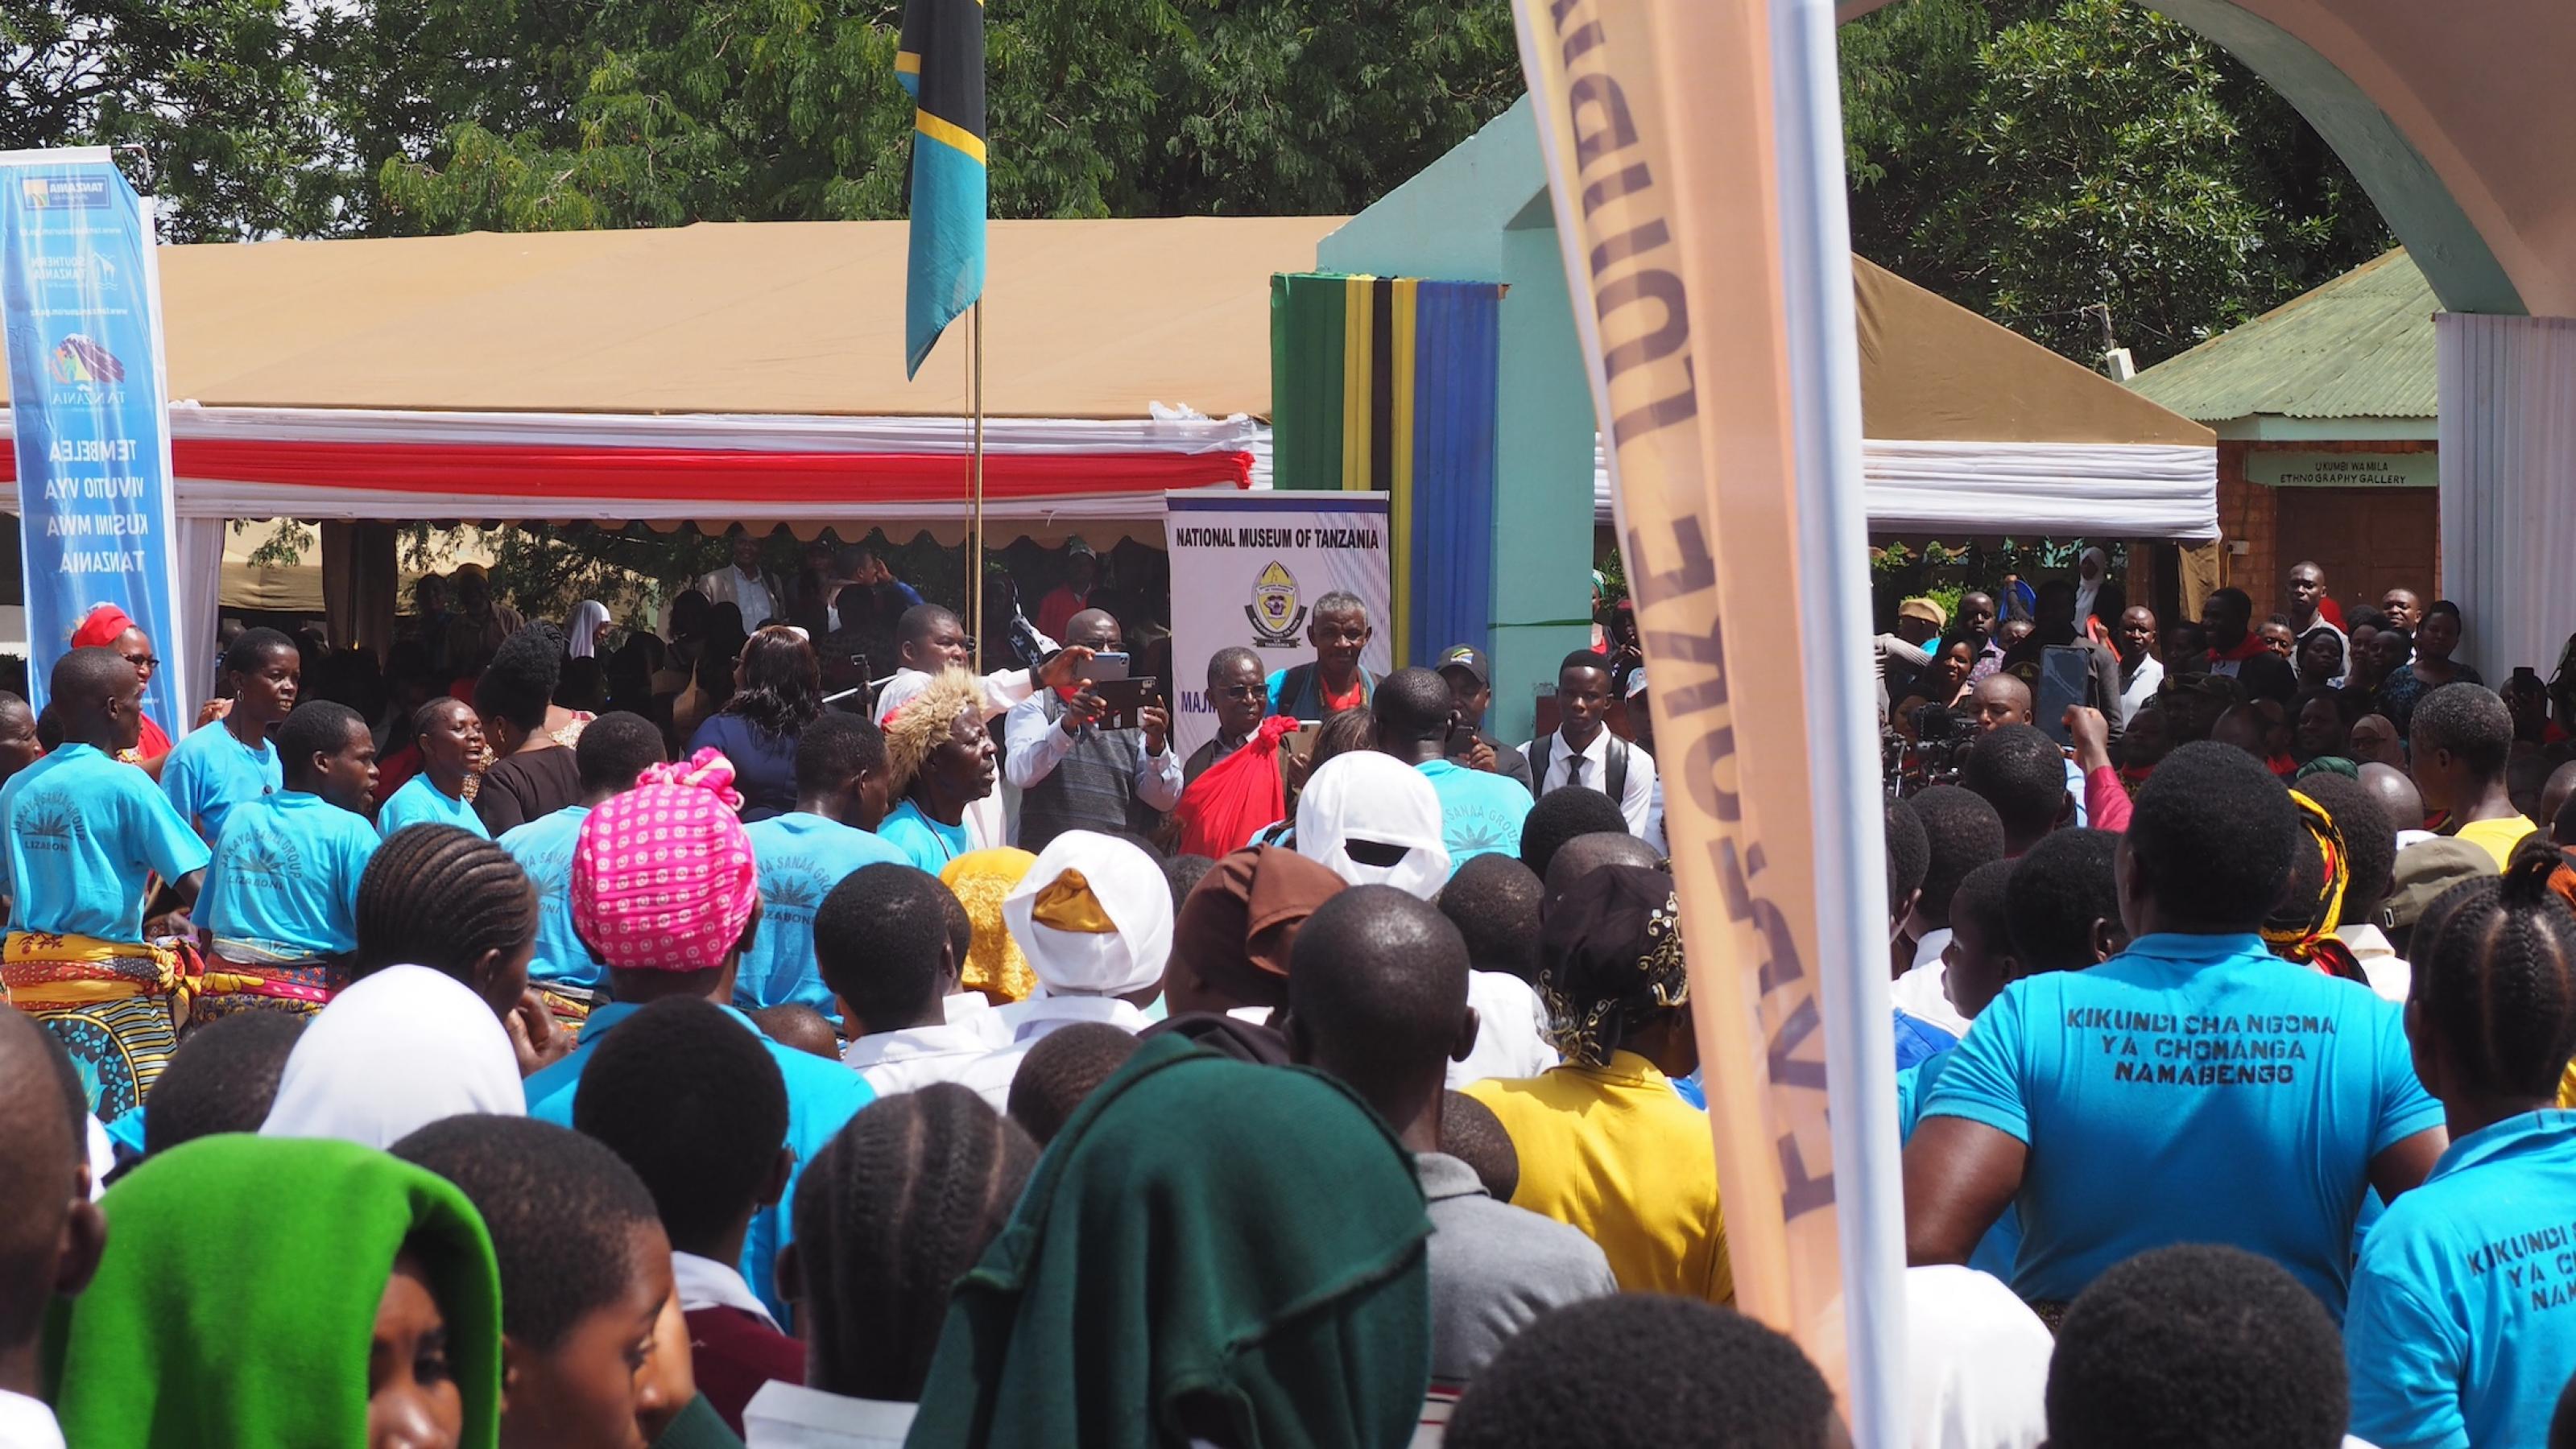 Eine Menschenmenge, zwei tansanische Flaggen, ein Banner mit Aufschrift „National Museum of Tanzania“